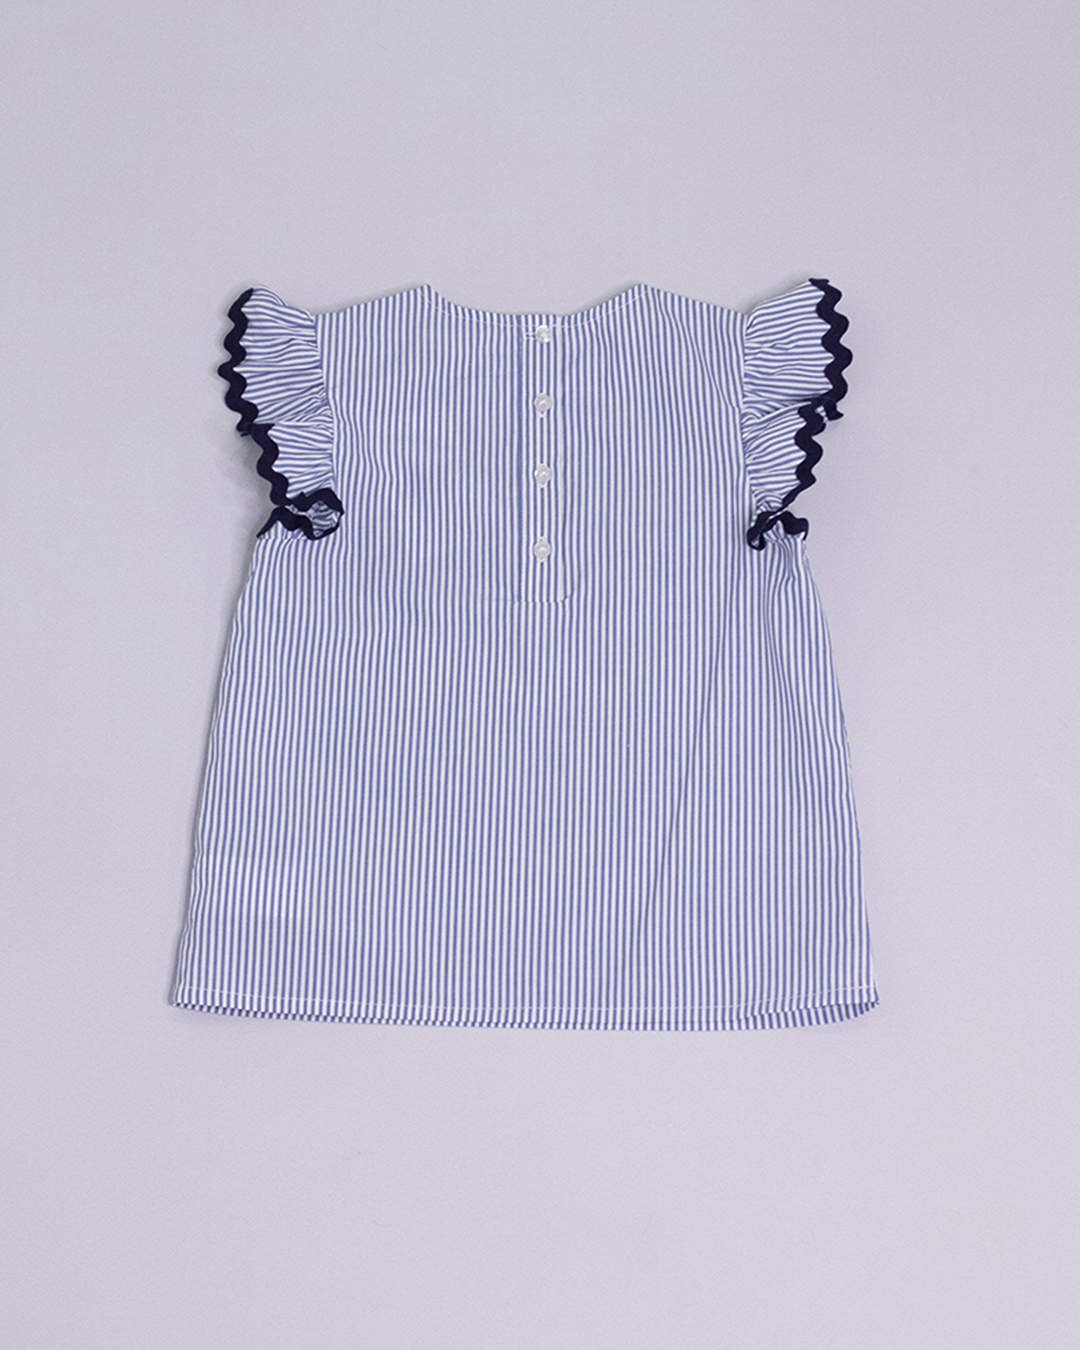 Blusa sin mangas de rayas azules y blancas, con volantes y cinta rick rack azul marino